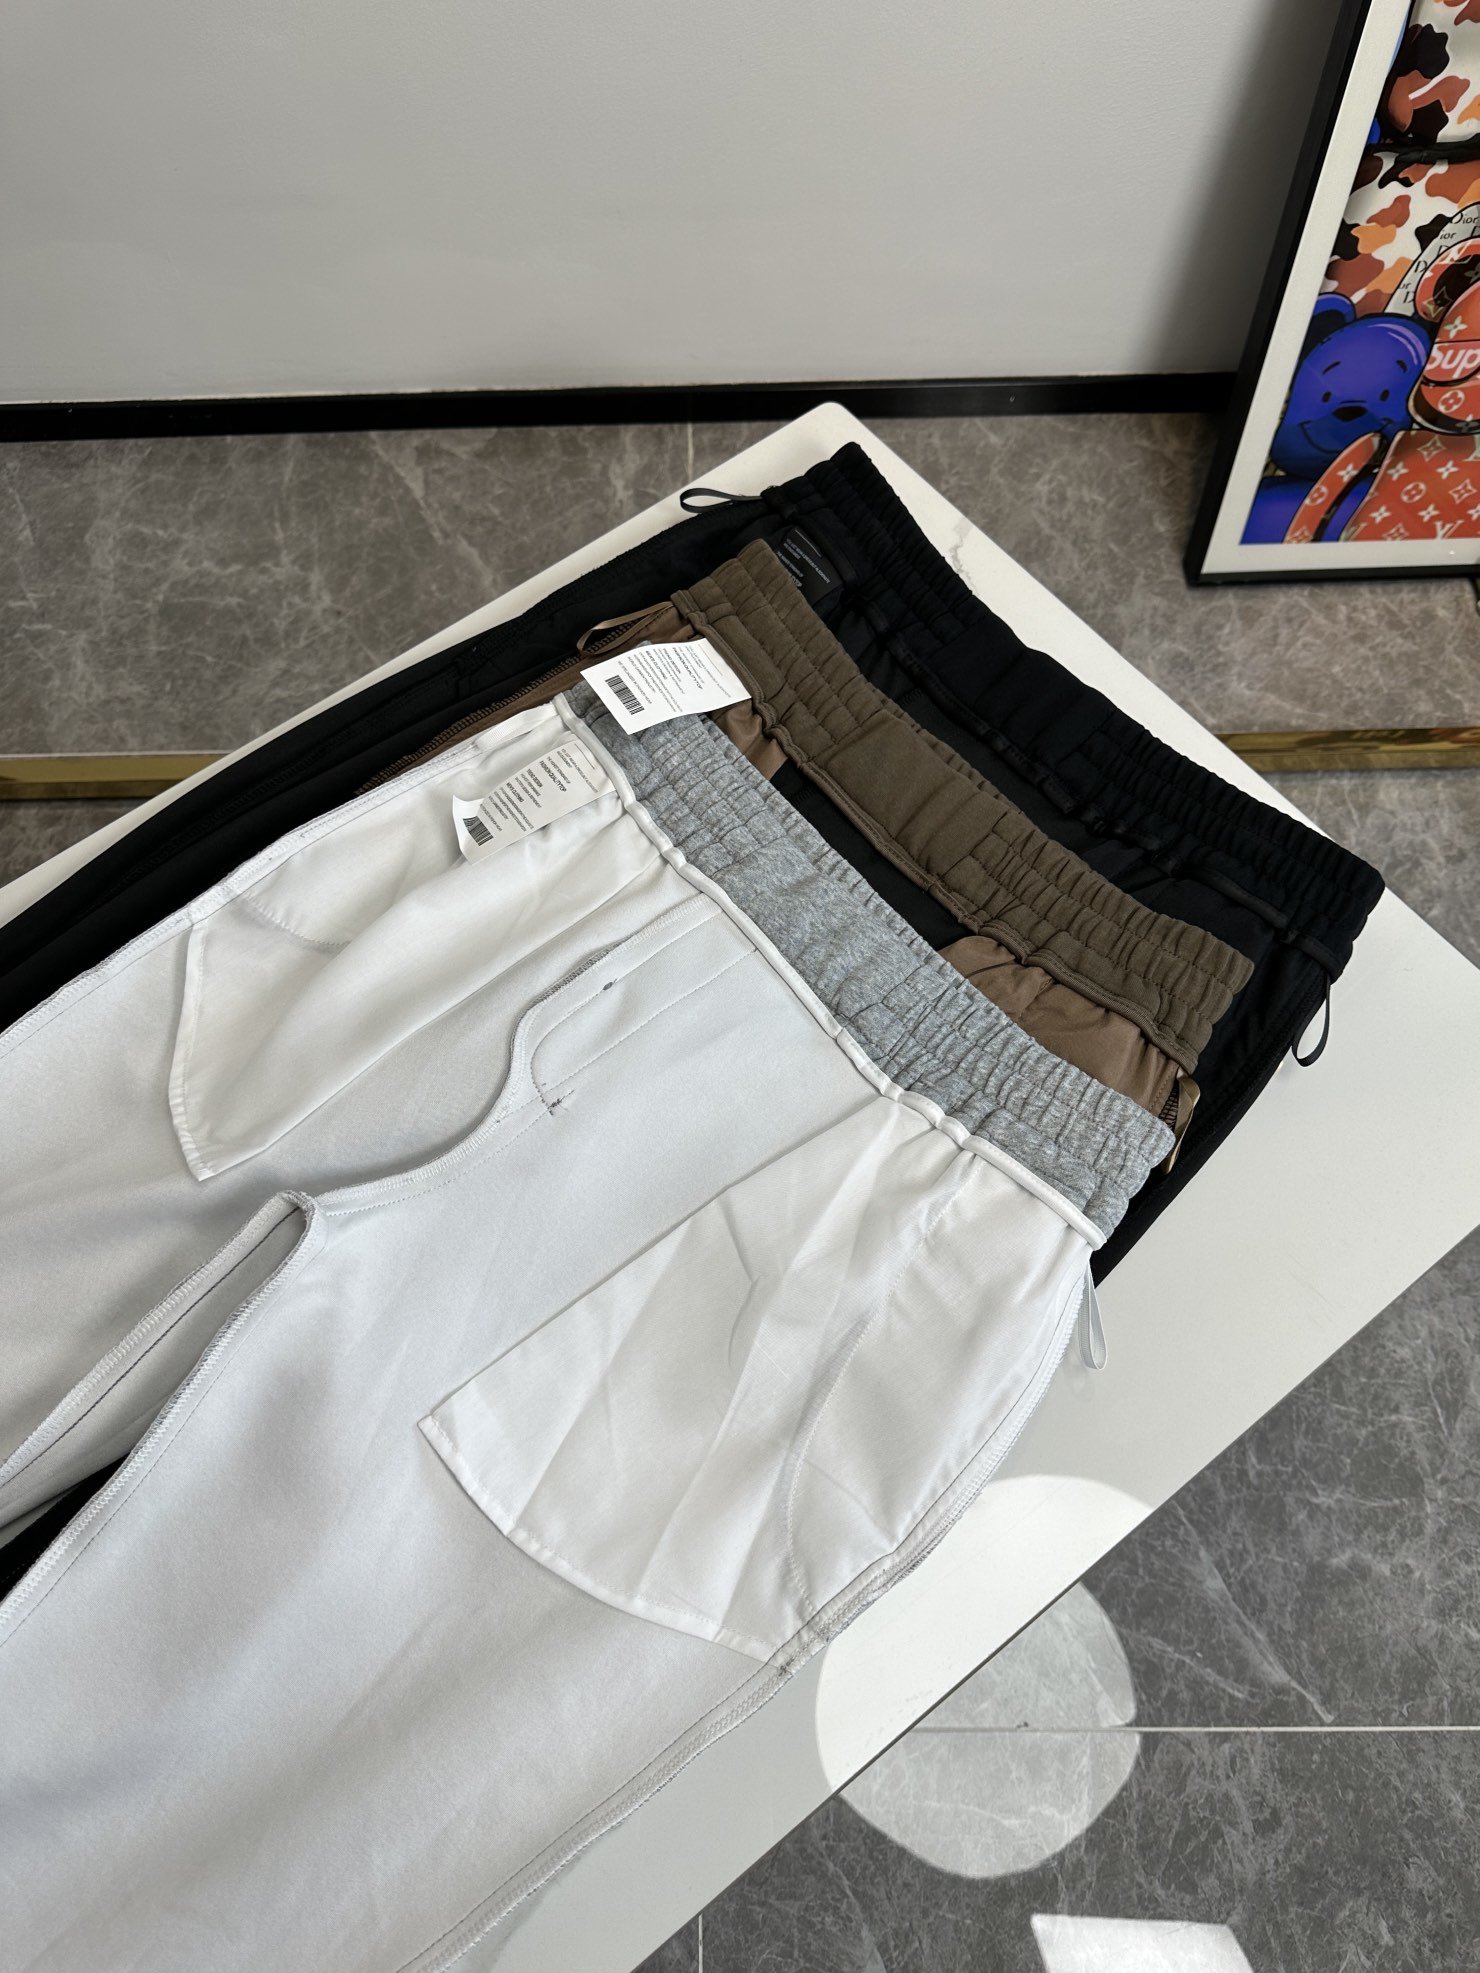 欧货小马Po家-234ss春夏新款进口纯棉质地复合面料再见基础款帅气卫裤.....一线时尚品牌出色独到的